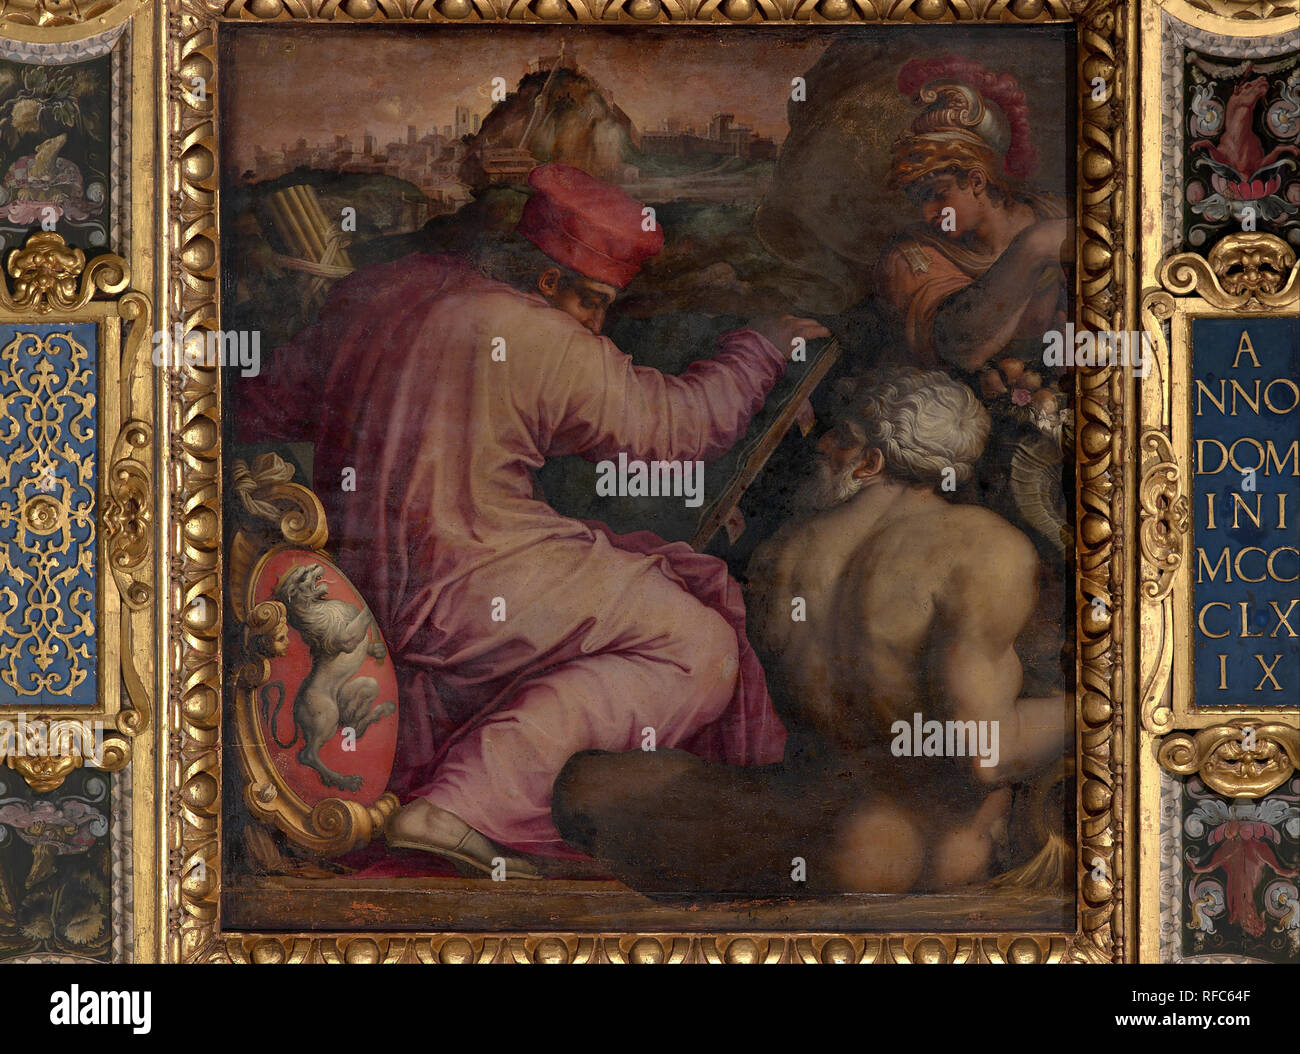 Allégorie de San Miniato dans le Val d'Arno. Date/période : 1563 - 1565. Peinture à l'huile sur bois. Hauteur : 250 mm (9.84 in) ; Largeur : 250 mm (9.84 in). Auteur : Giorgio Vasari. VASARI, Giorgio. Banque D'Images